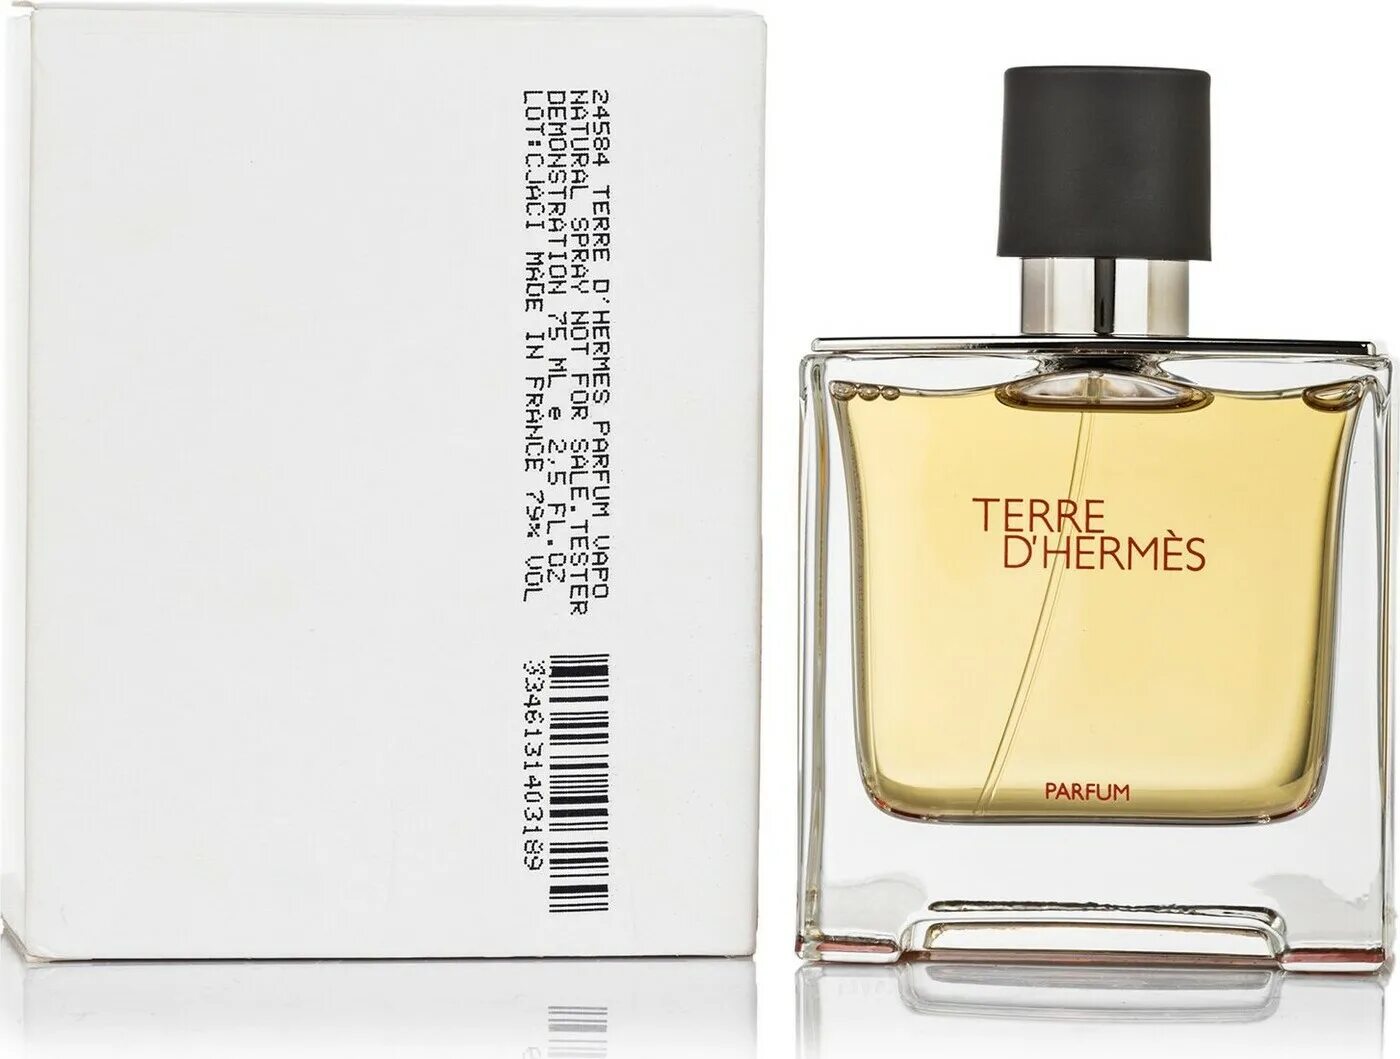 Гермес м. Hermes Terre m Tester Parfum 75ml. Terre d Hermes +Parfum 75 ml. Hermes Terre d'Hermes 75 тестер. Hermes Terre d'Hermes тестер 20 мл.